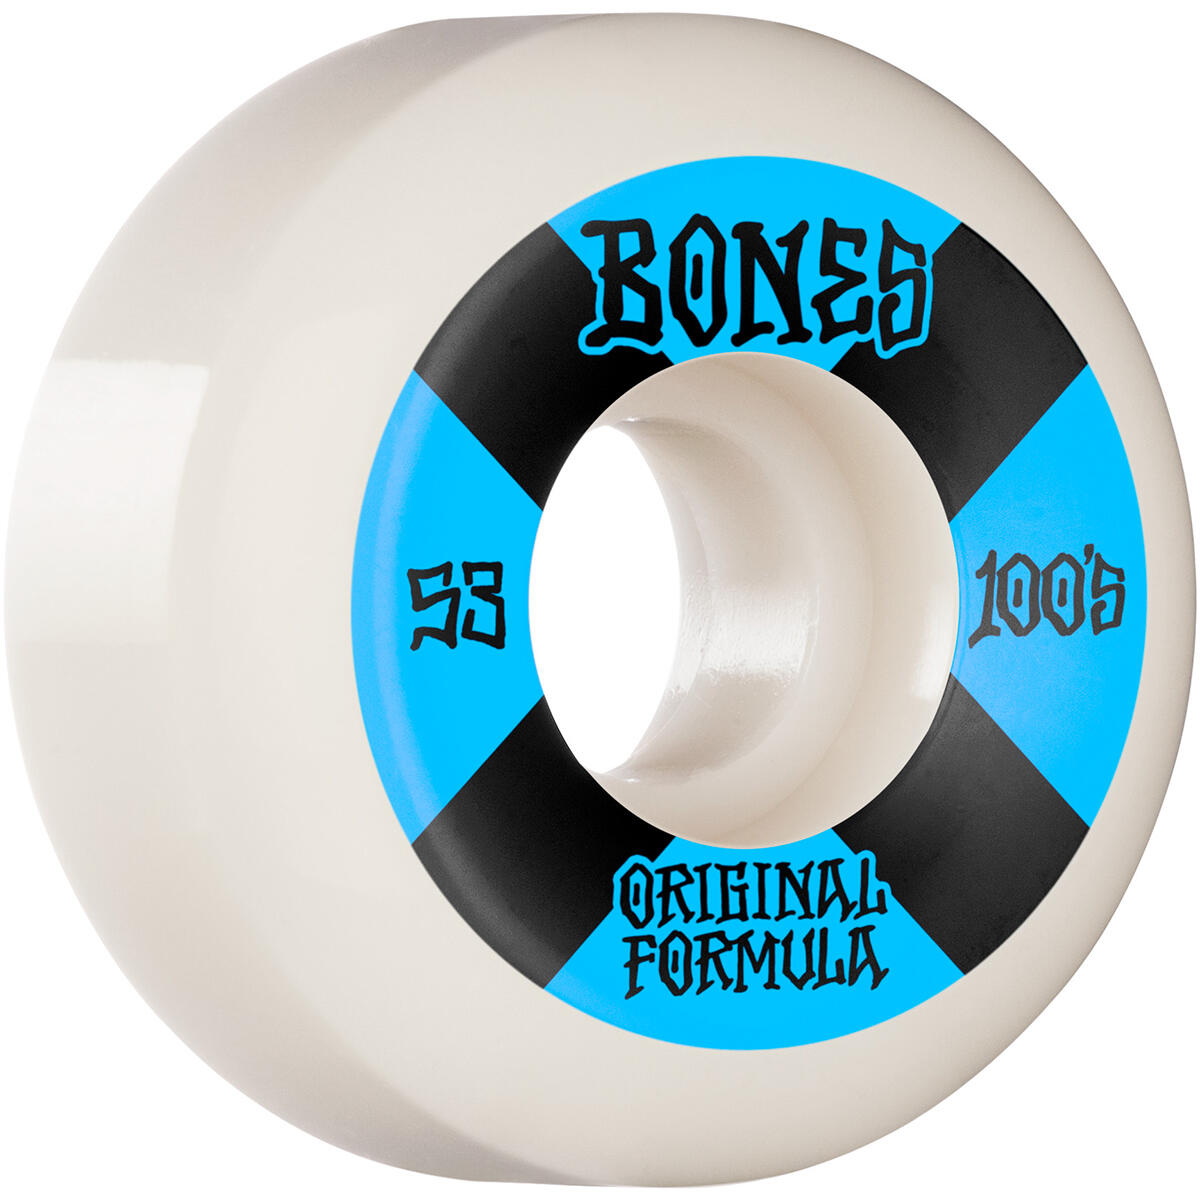 Bones Wheels 100 #4 V5 Sidecut Og Formula 53Mm - White/Blue